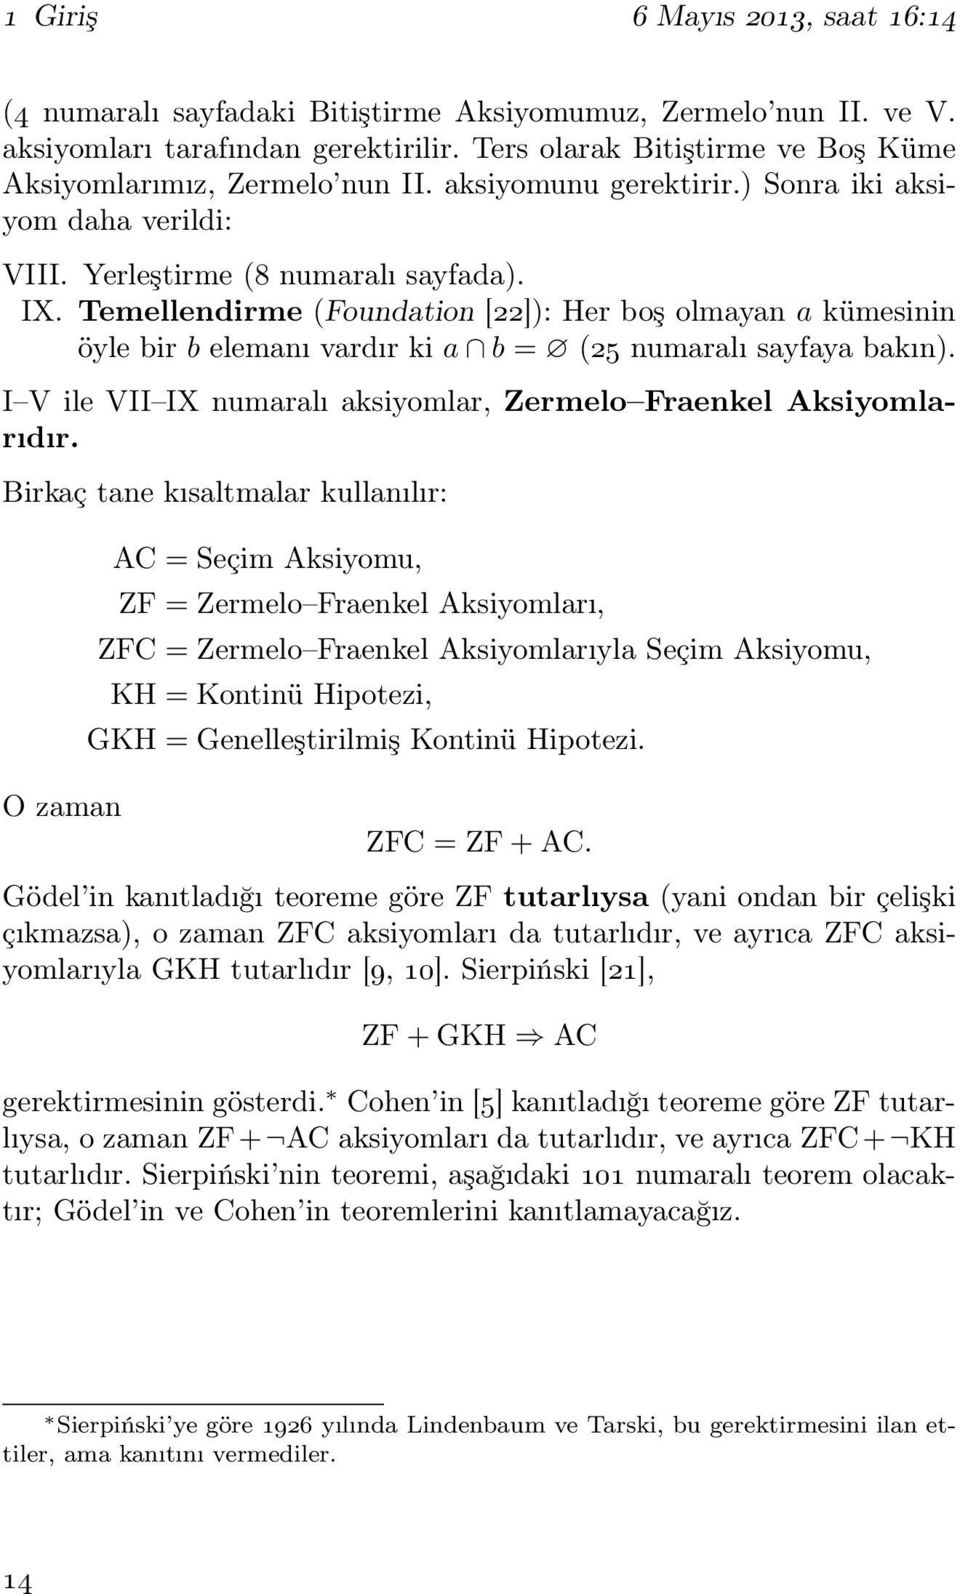 Temellendirme (Foundation [22]): Her boş olmayan a kümesinin öyle bir b elemanı vardır ki a b = (25 numaralı sayfaya bakın). I V ile VII IX numaralı aksiyomlar, Zermelo Fraenkel Aksiyomlarıdır.